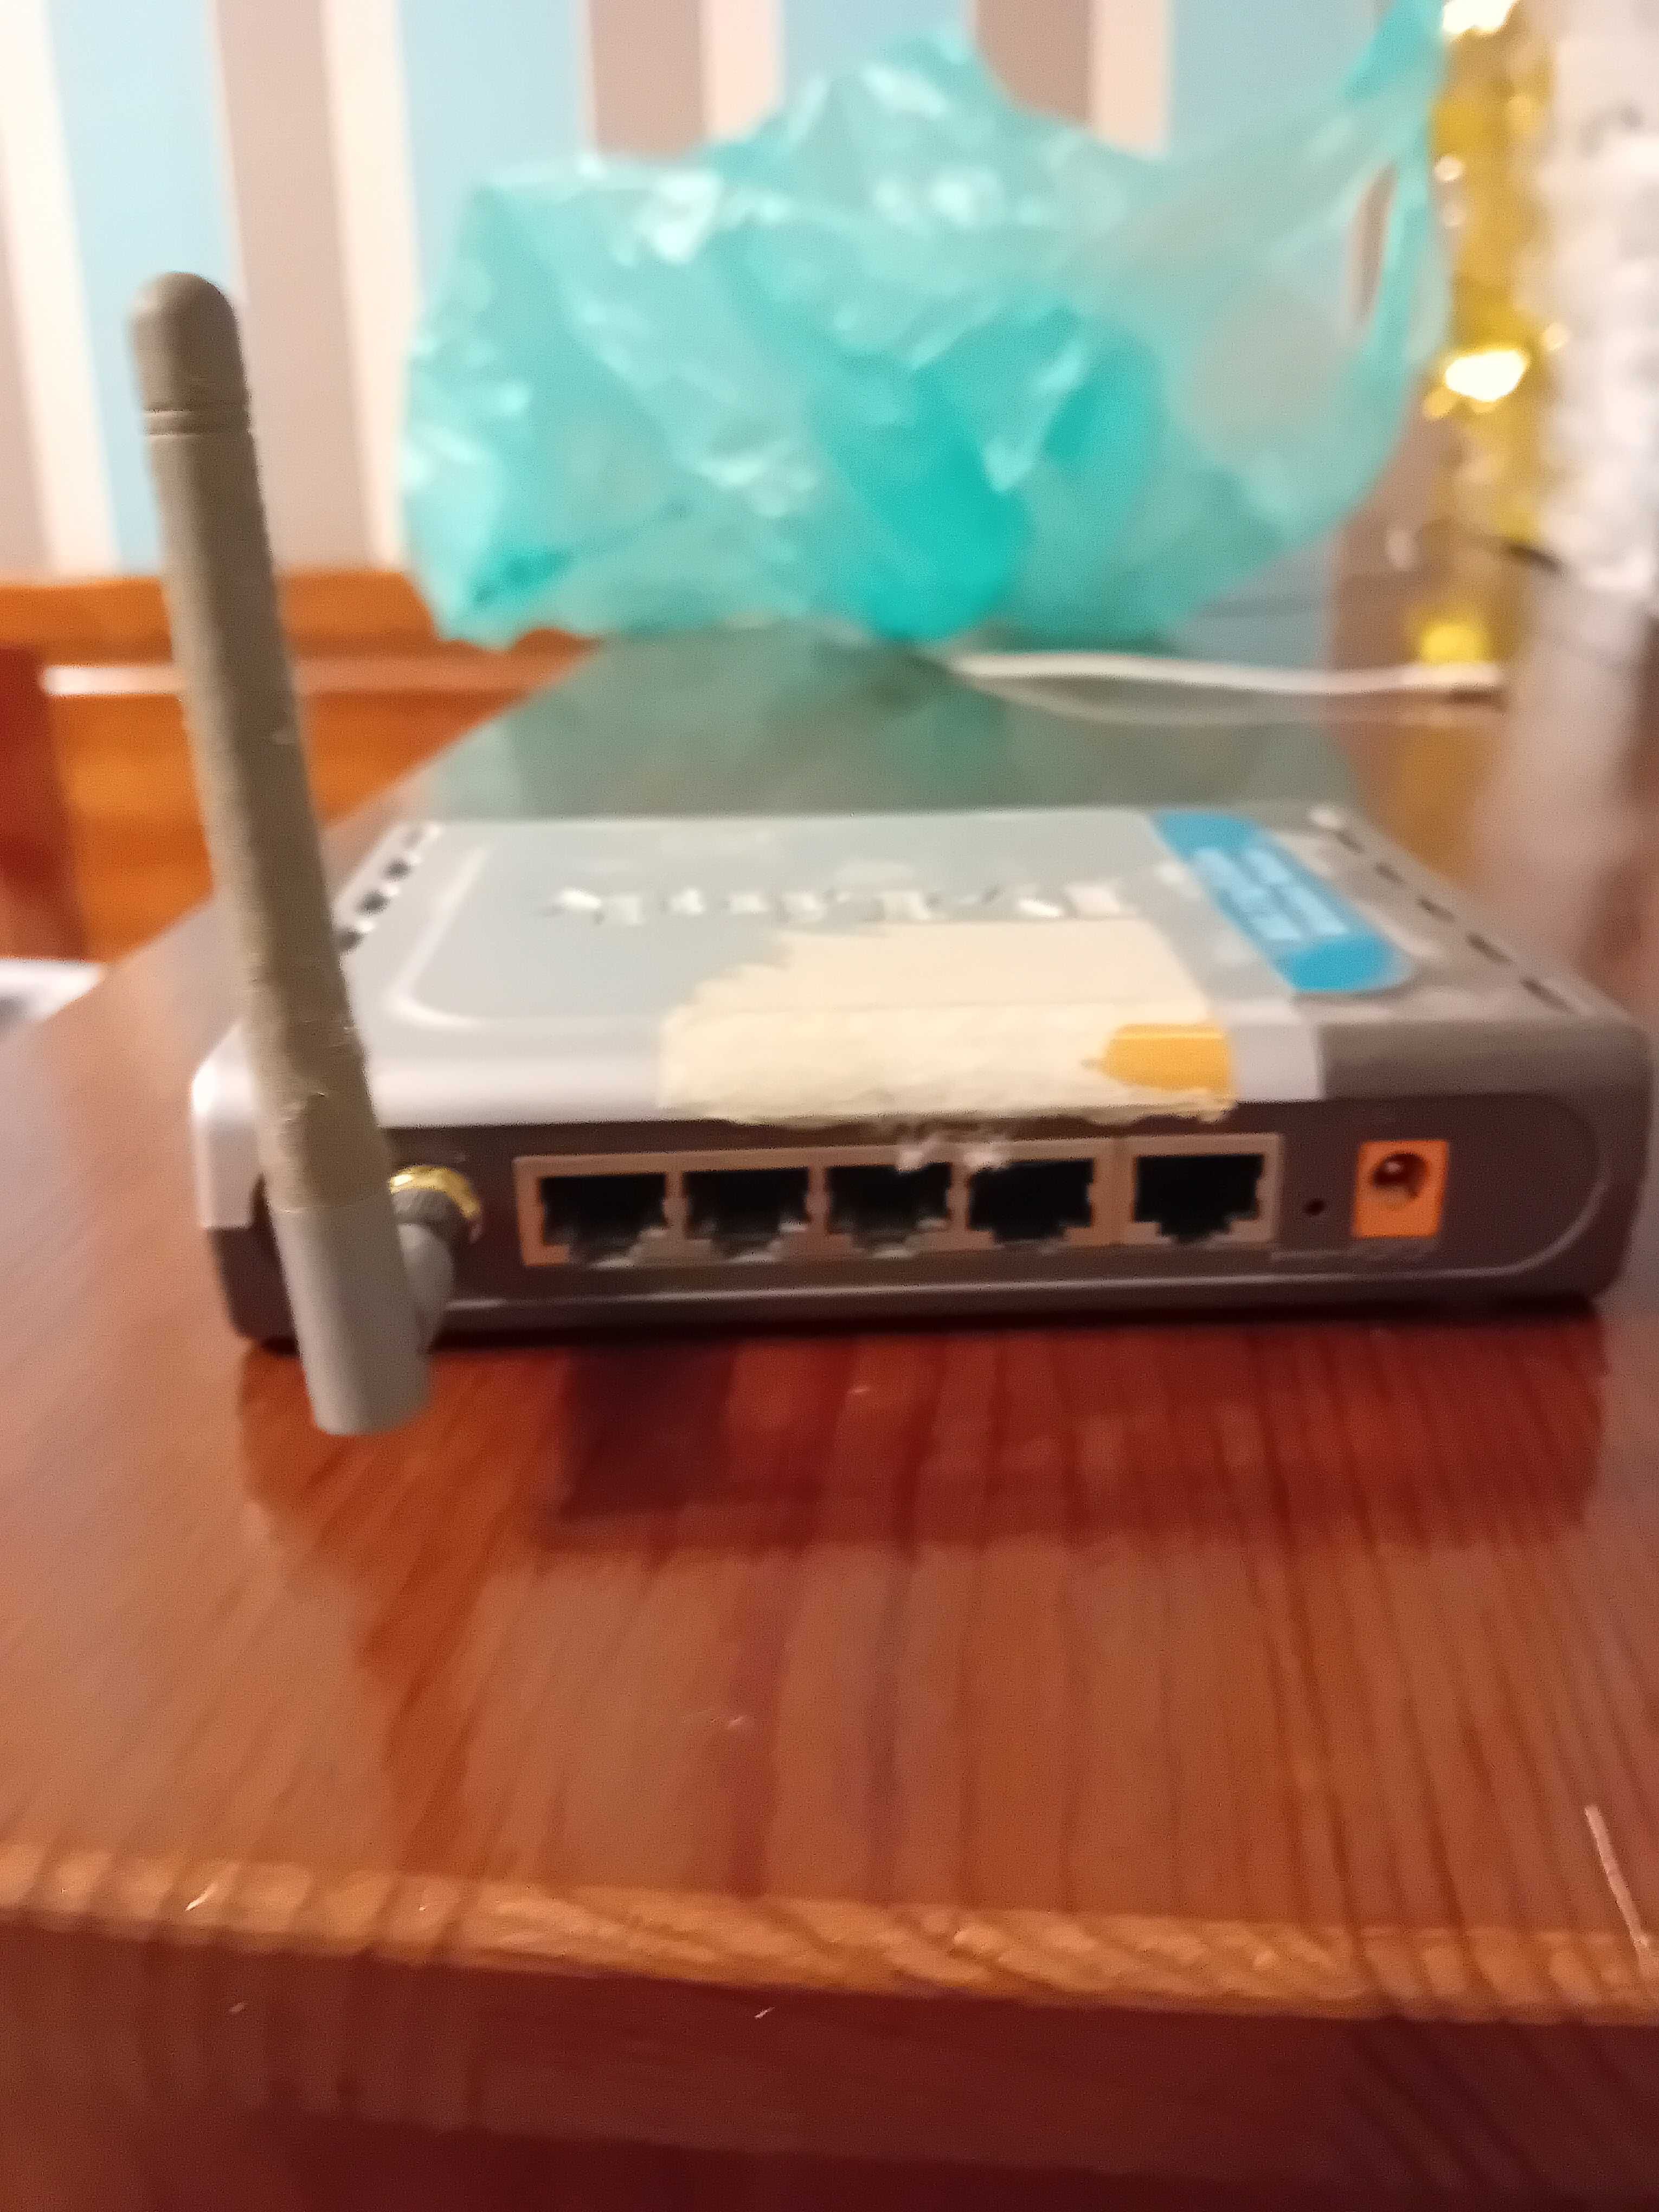 Рутер D-link wireless g router